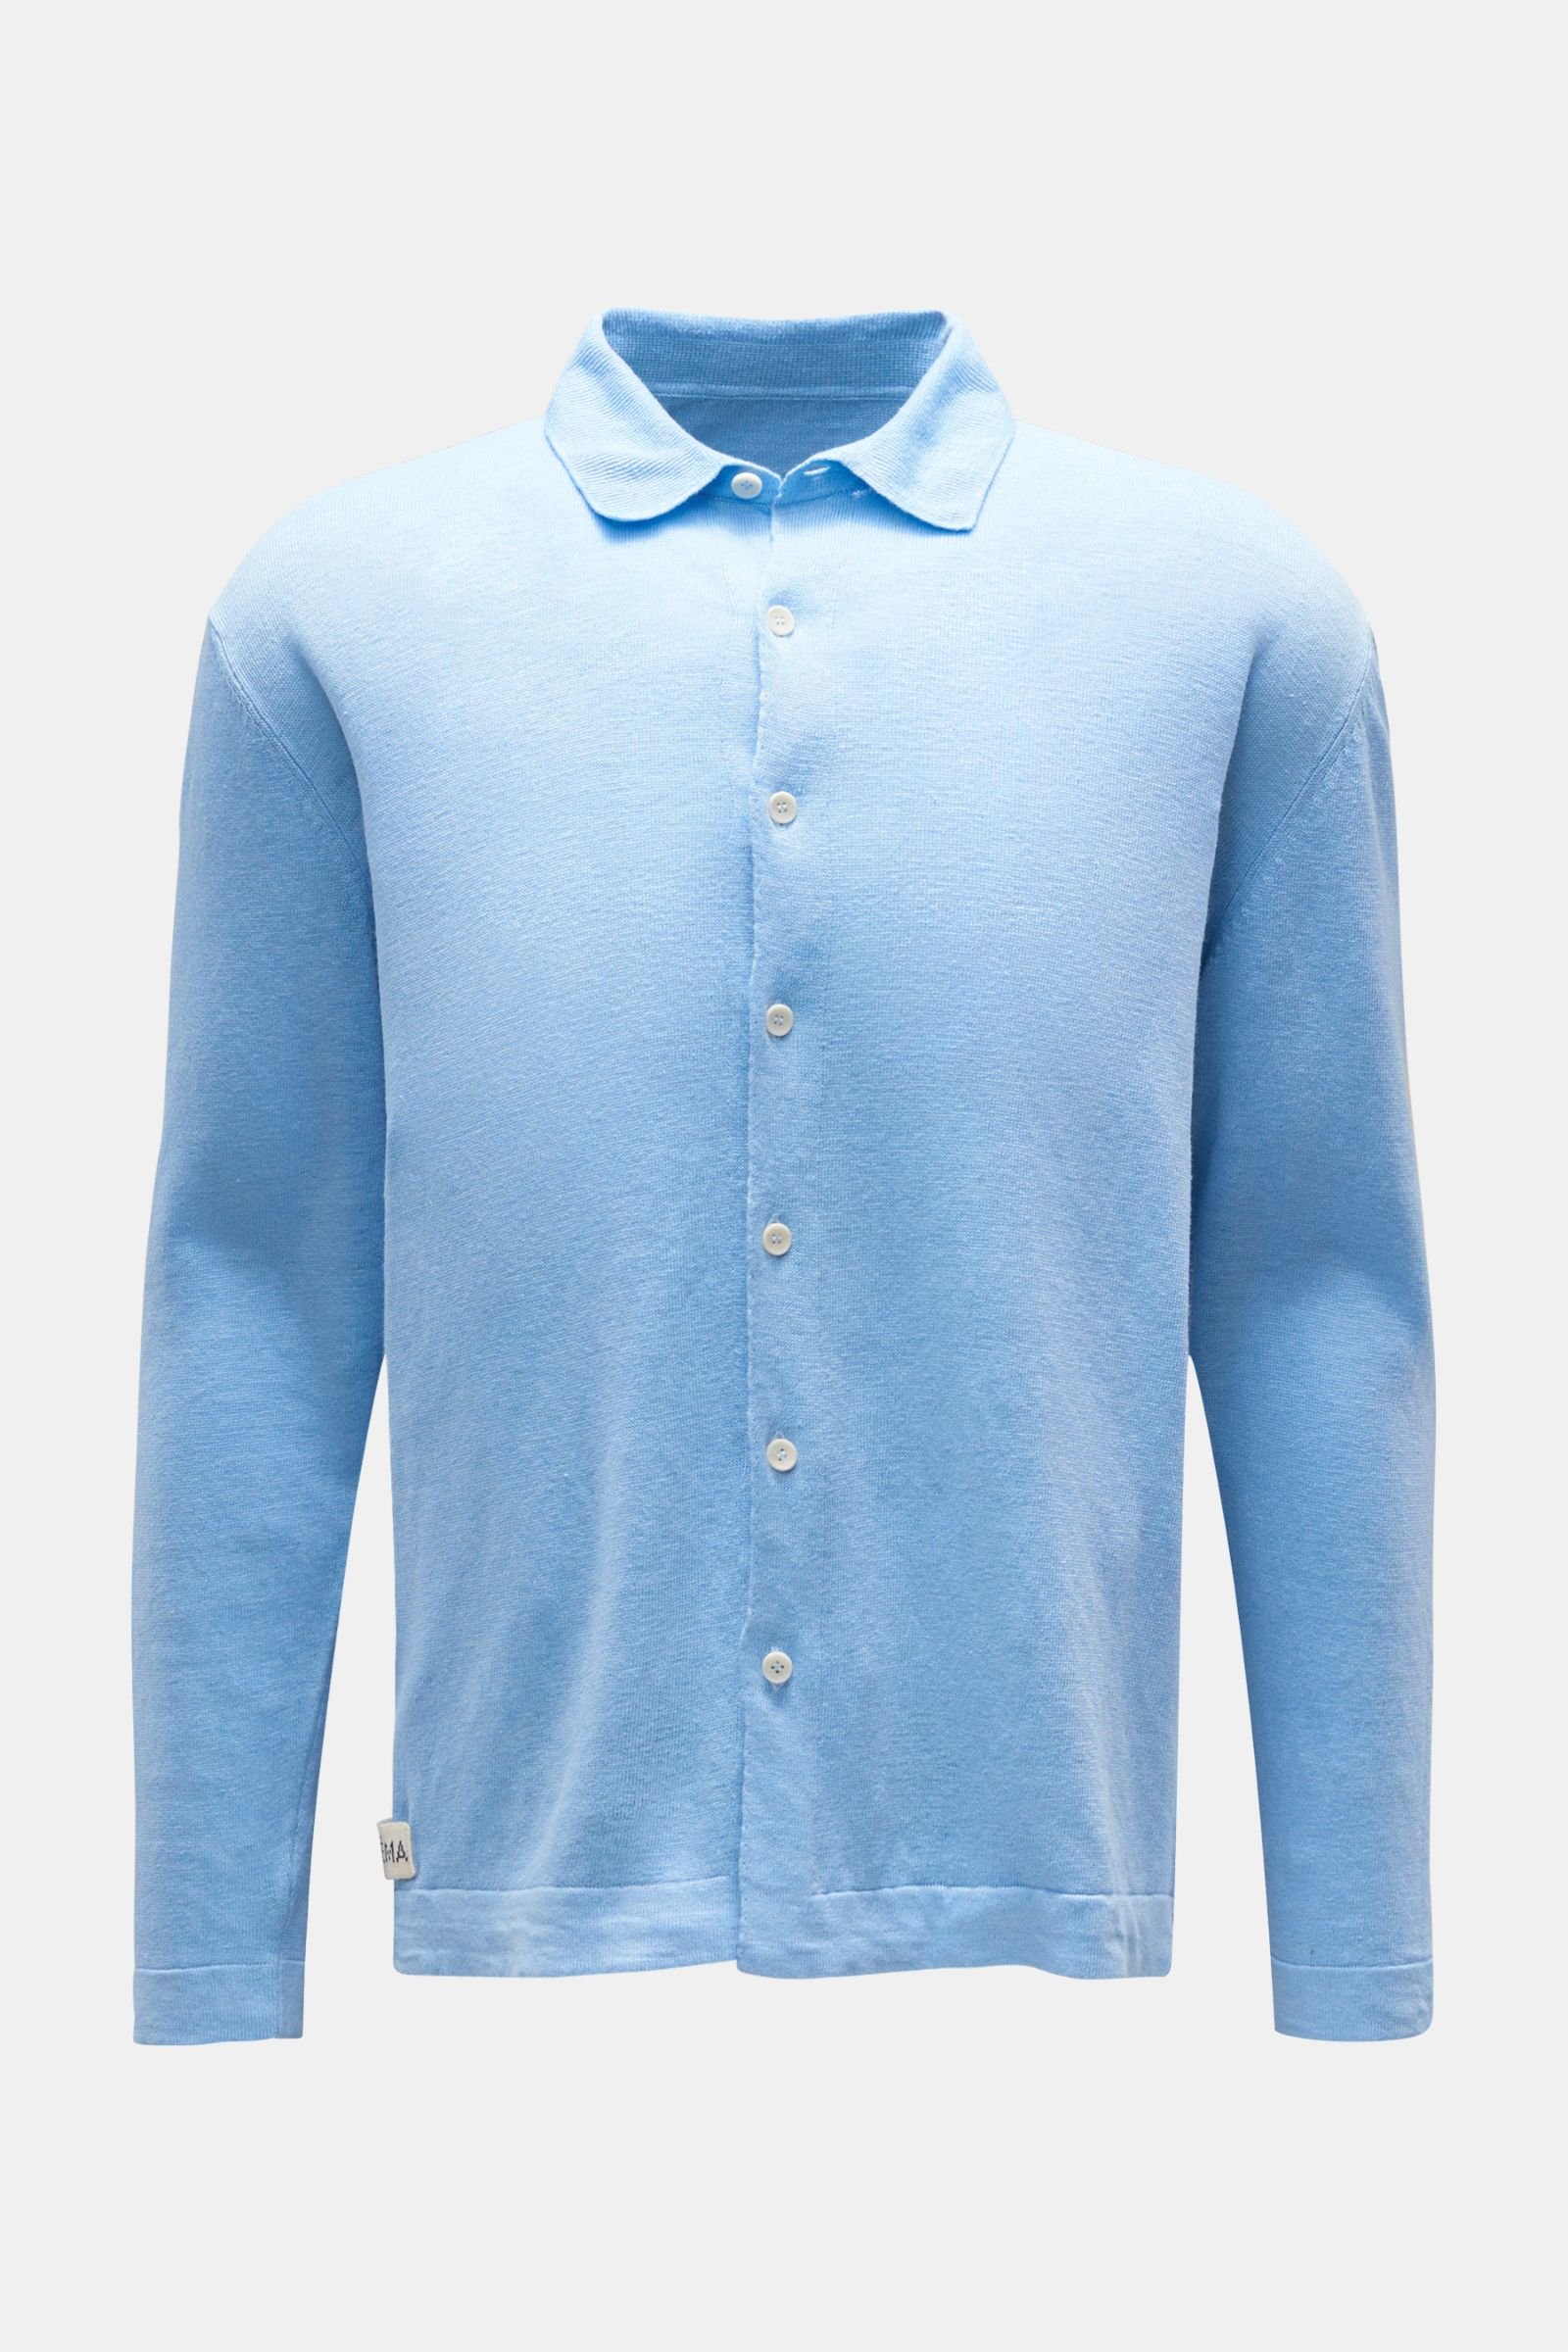 Linen knit shirt narrow collar light blue 